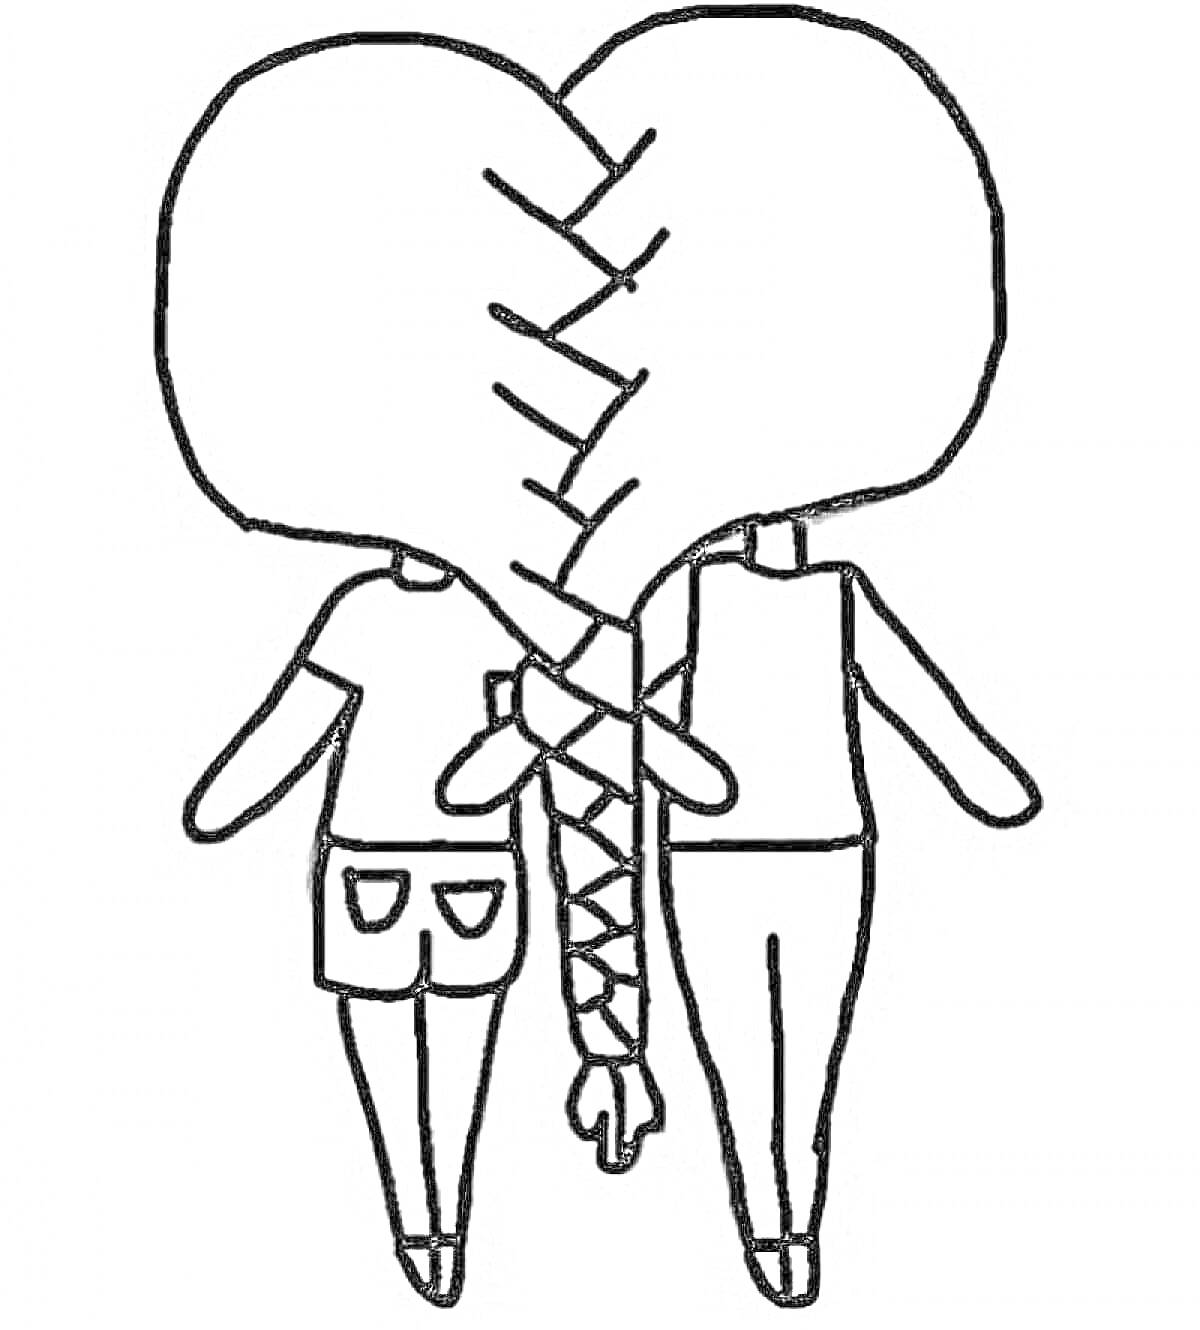 Два персонажа Gacha Life со сплетённой косой и сердцем